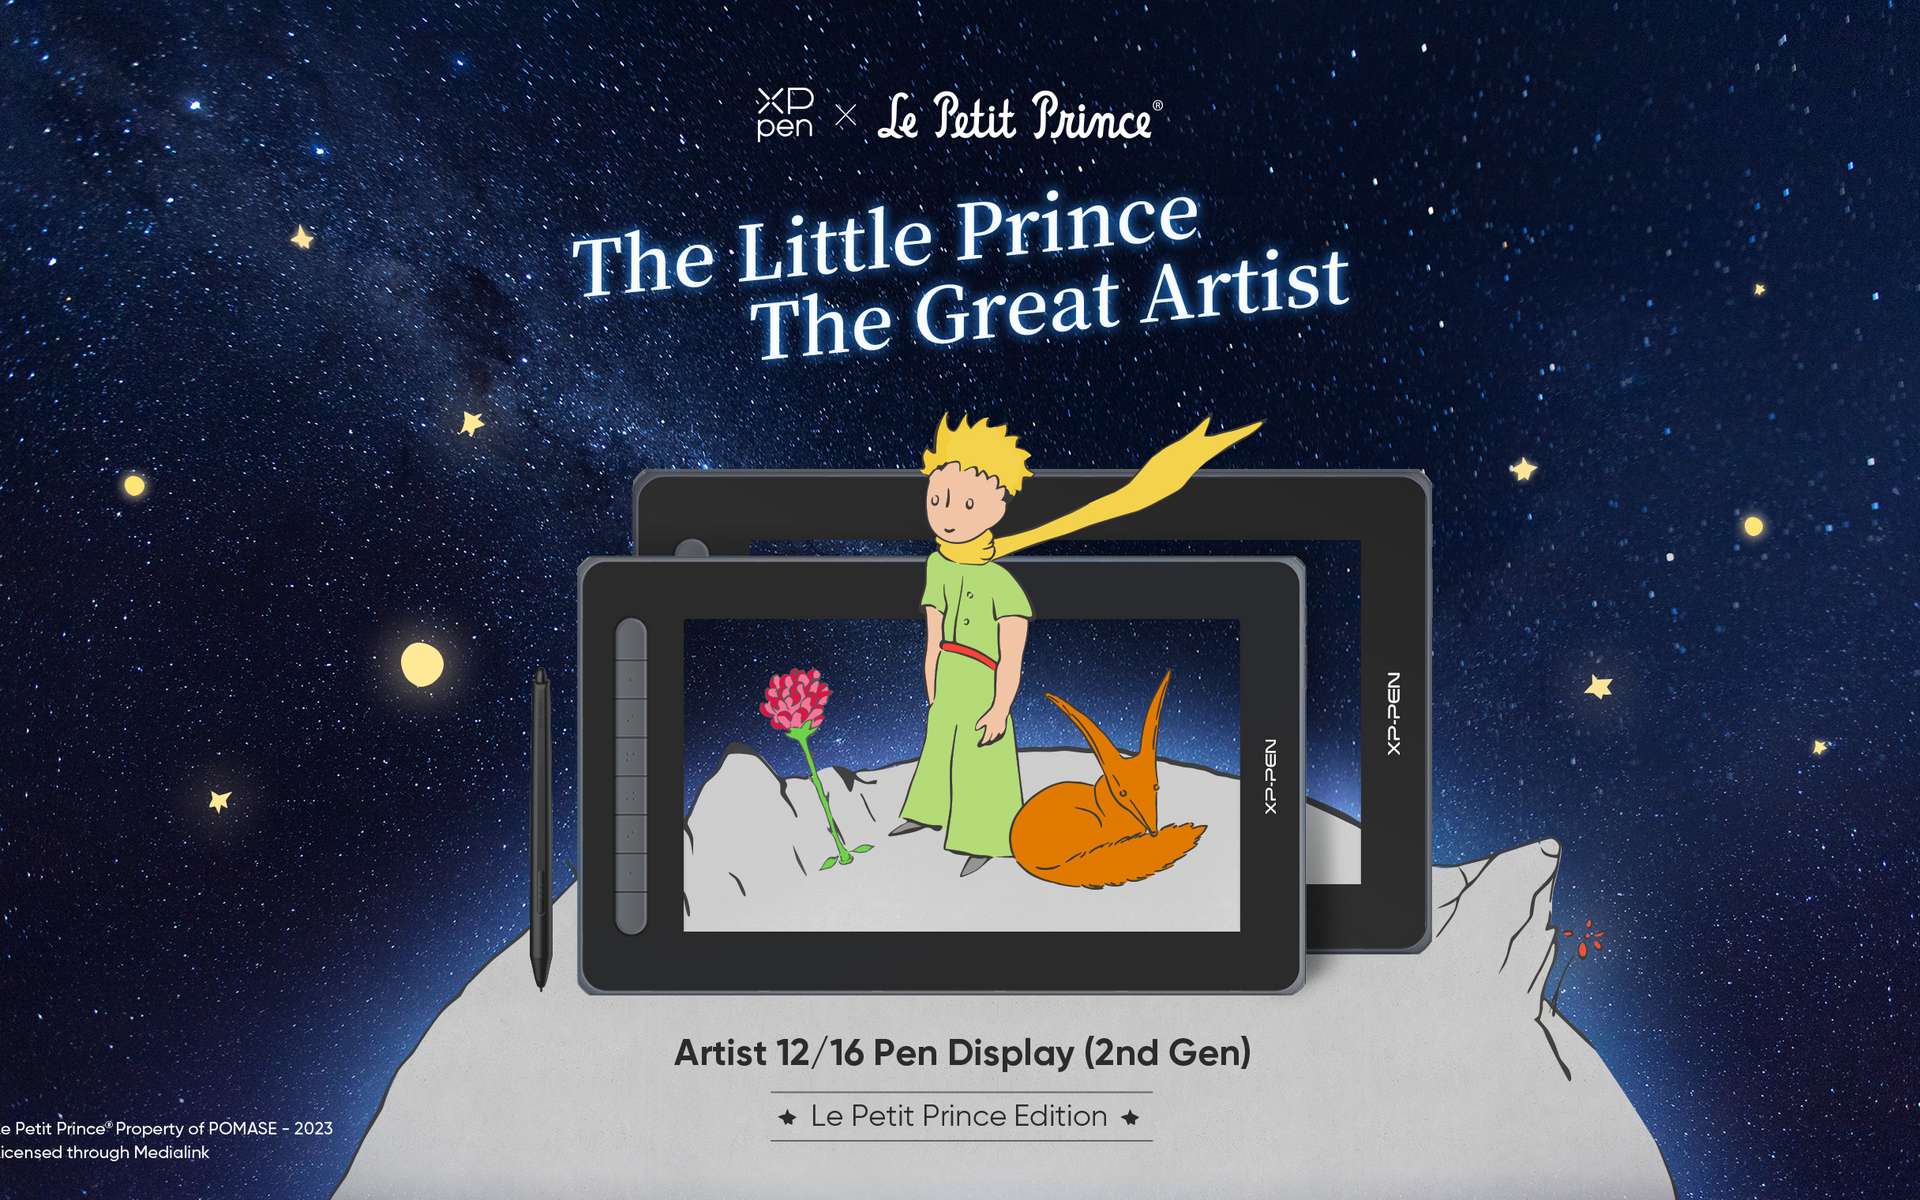 XPPen et Le Petit Prince s'unissent pour une collaboration exceptionnelle !